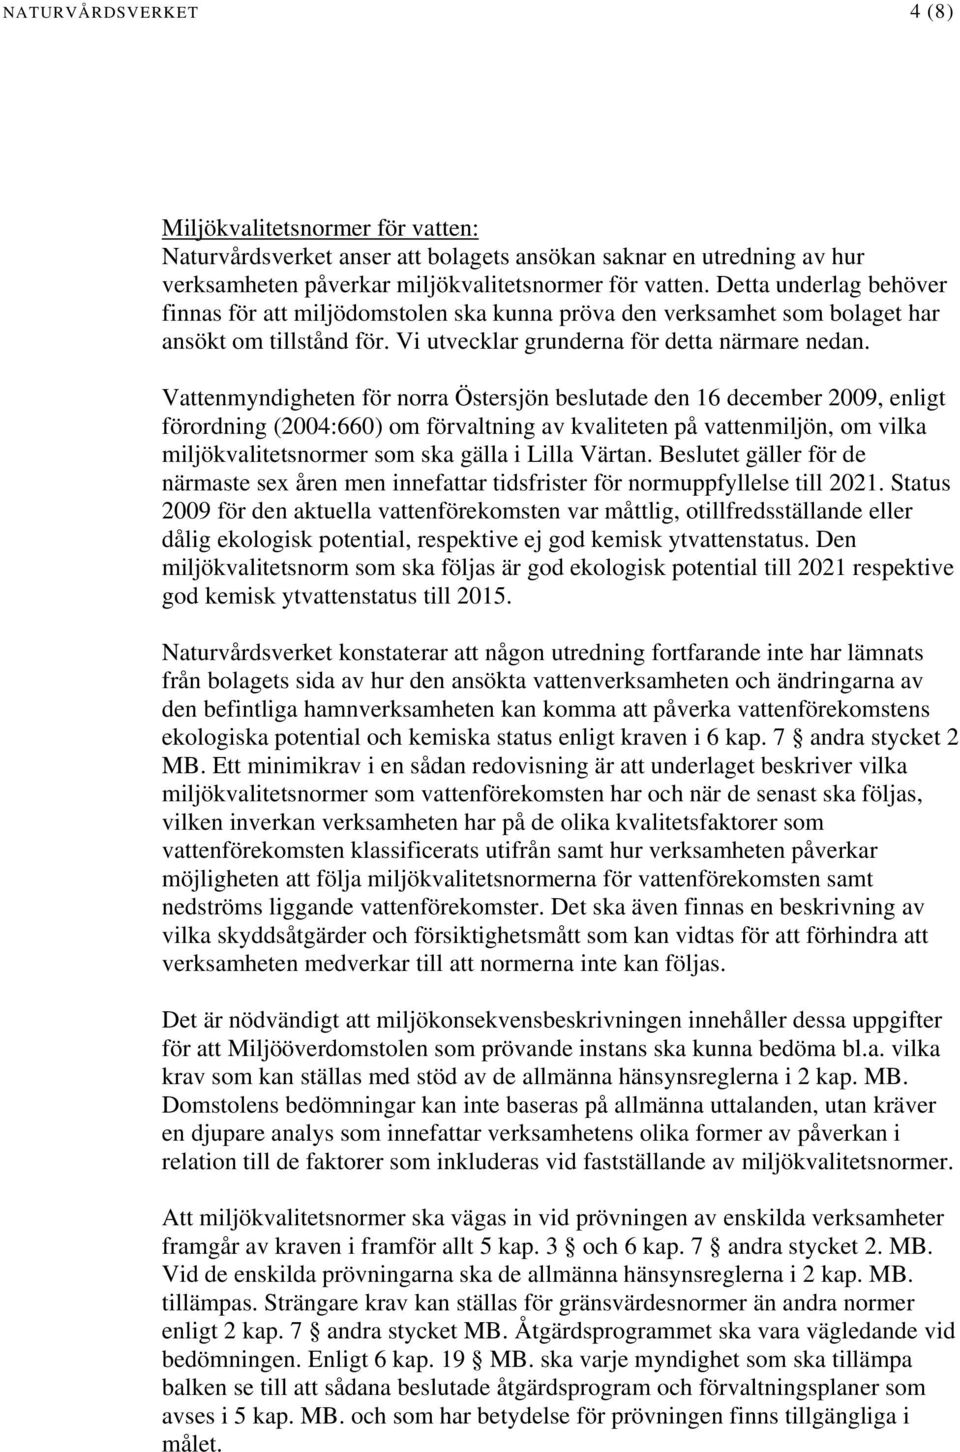 Vattenmyndigheten för norra Östersjön beslutade den 16 december 2009, enligt förordning (2004:660) om förvaltning av kvaliteten på vattenmiljön, om vilka miljökvalitetsnormer som ska gälla i Lilla